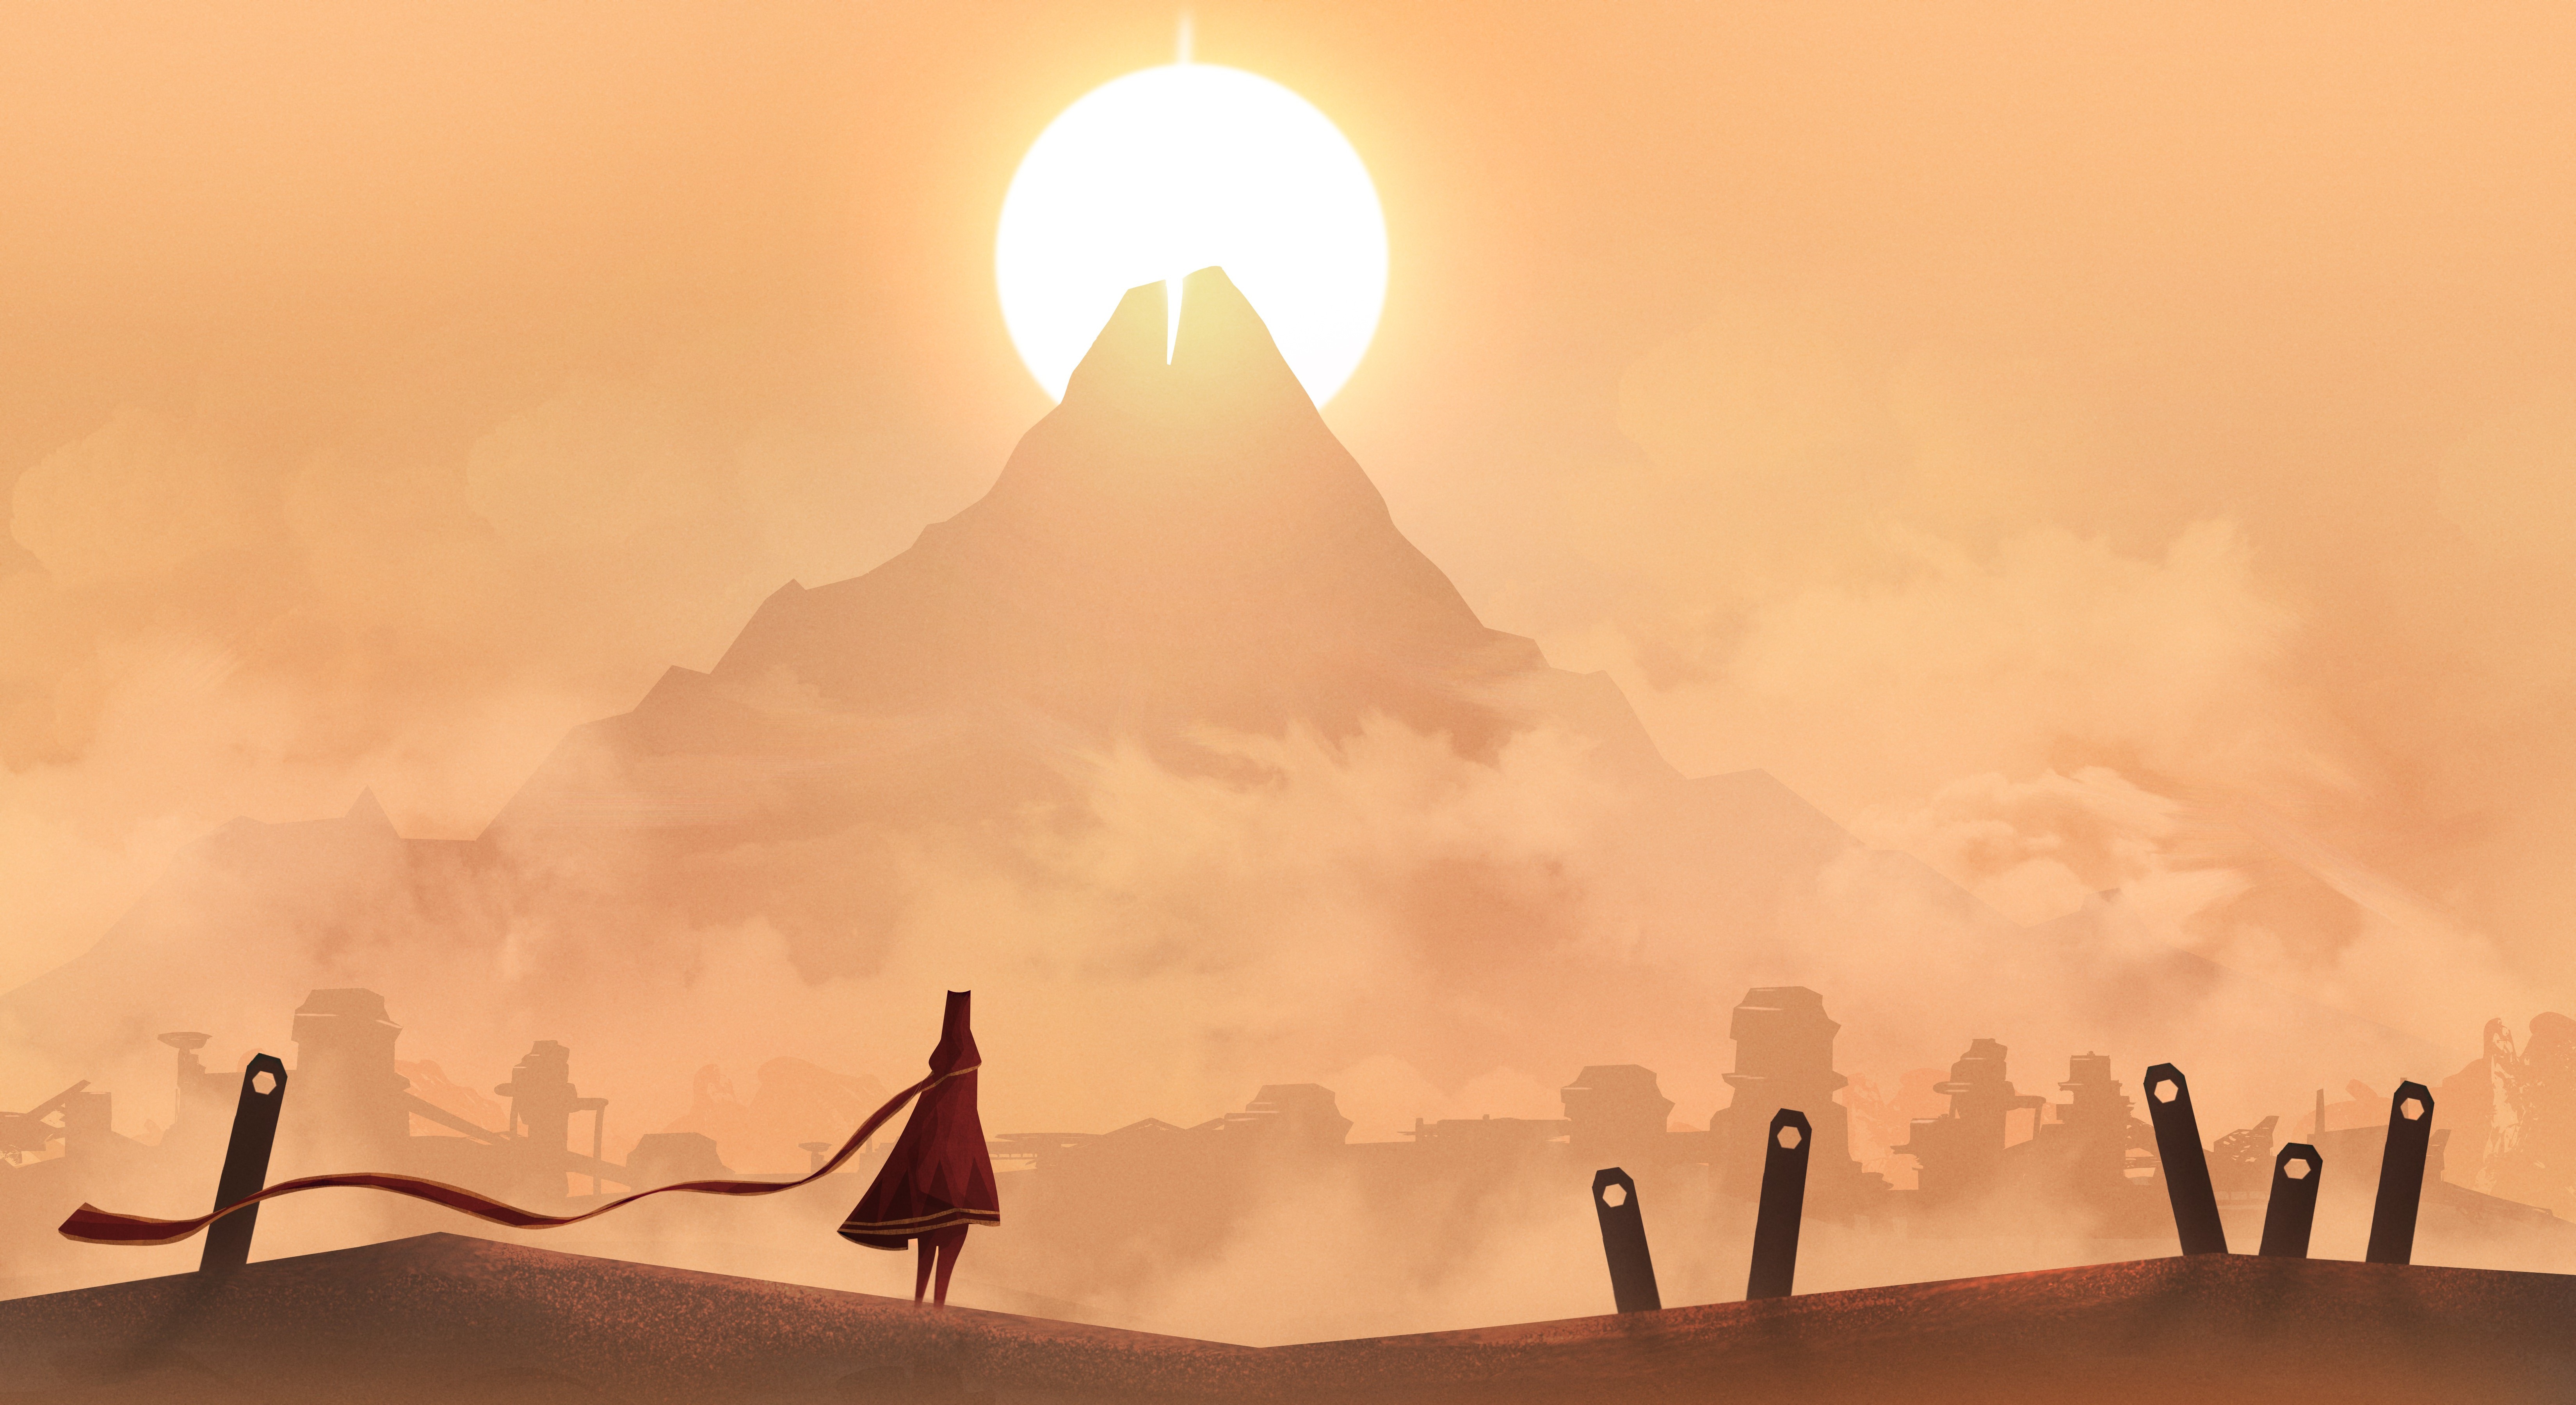 Journey (game), Vectors, Landscape, Mountain, Sun Wallpaper